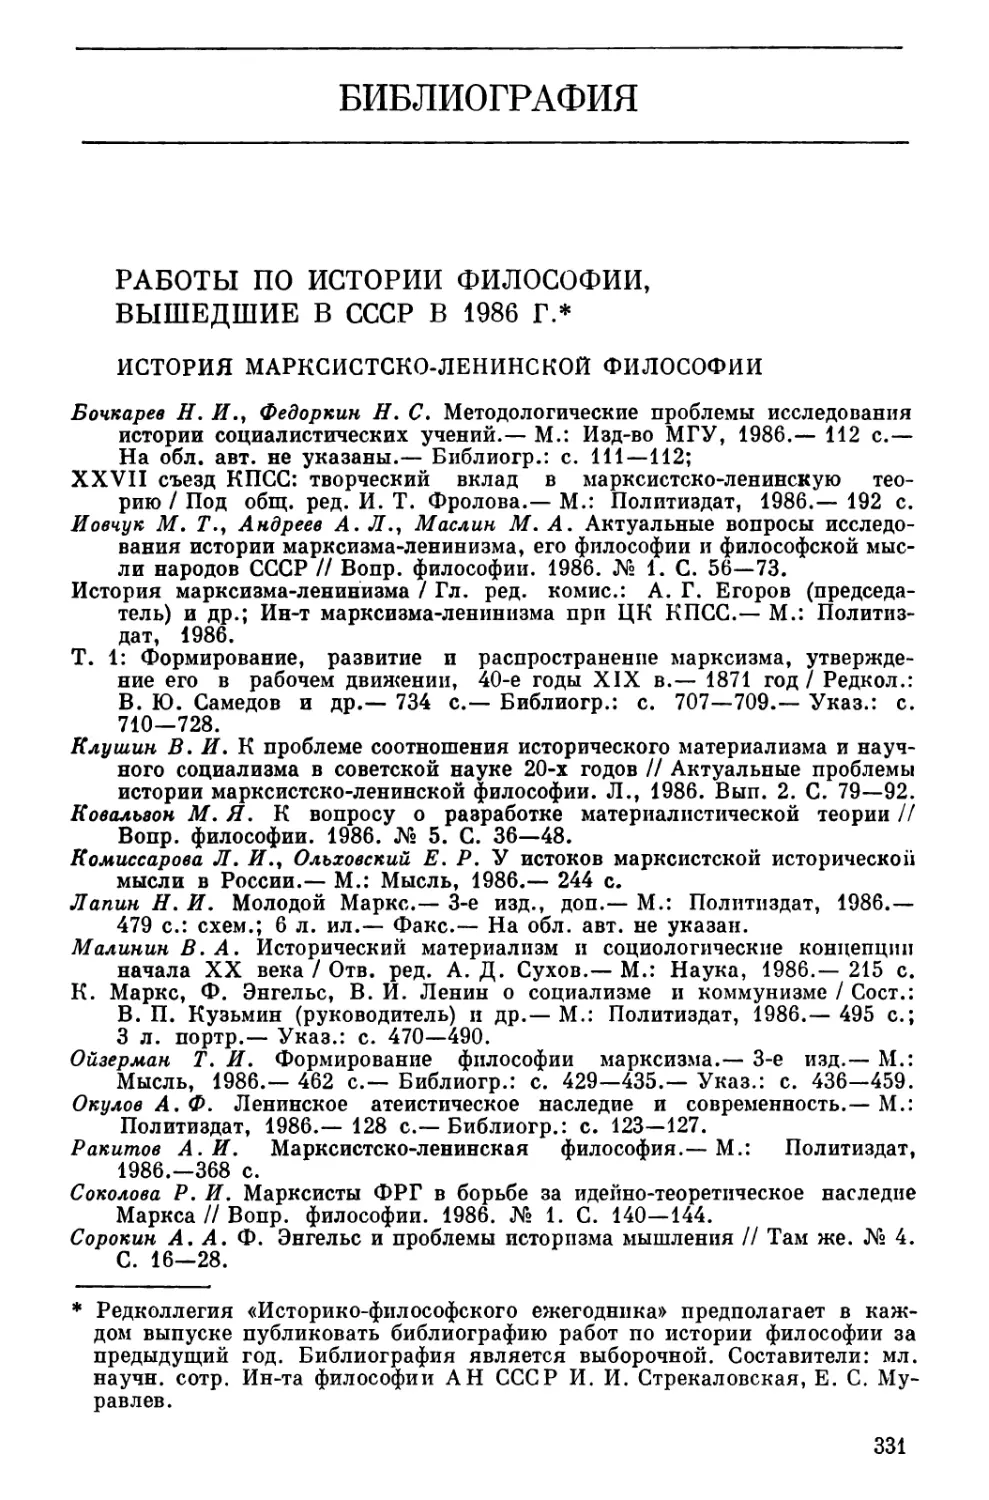 Библиография. Работы по истории философии, вышедшие в СССР в 1986 г.